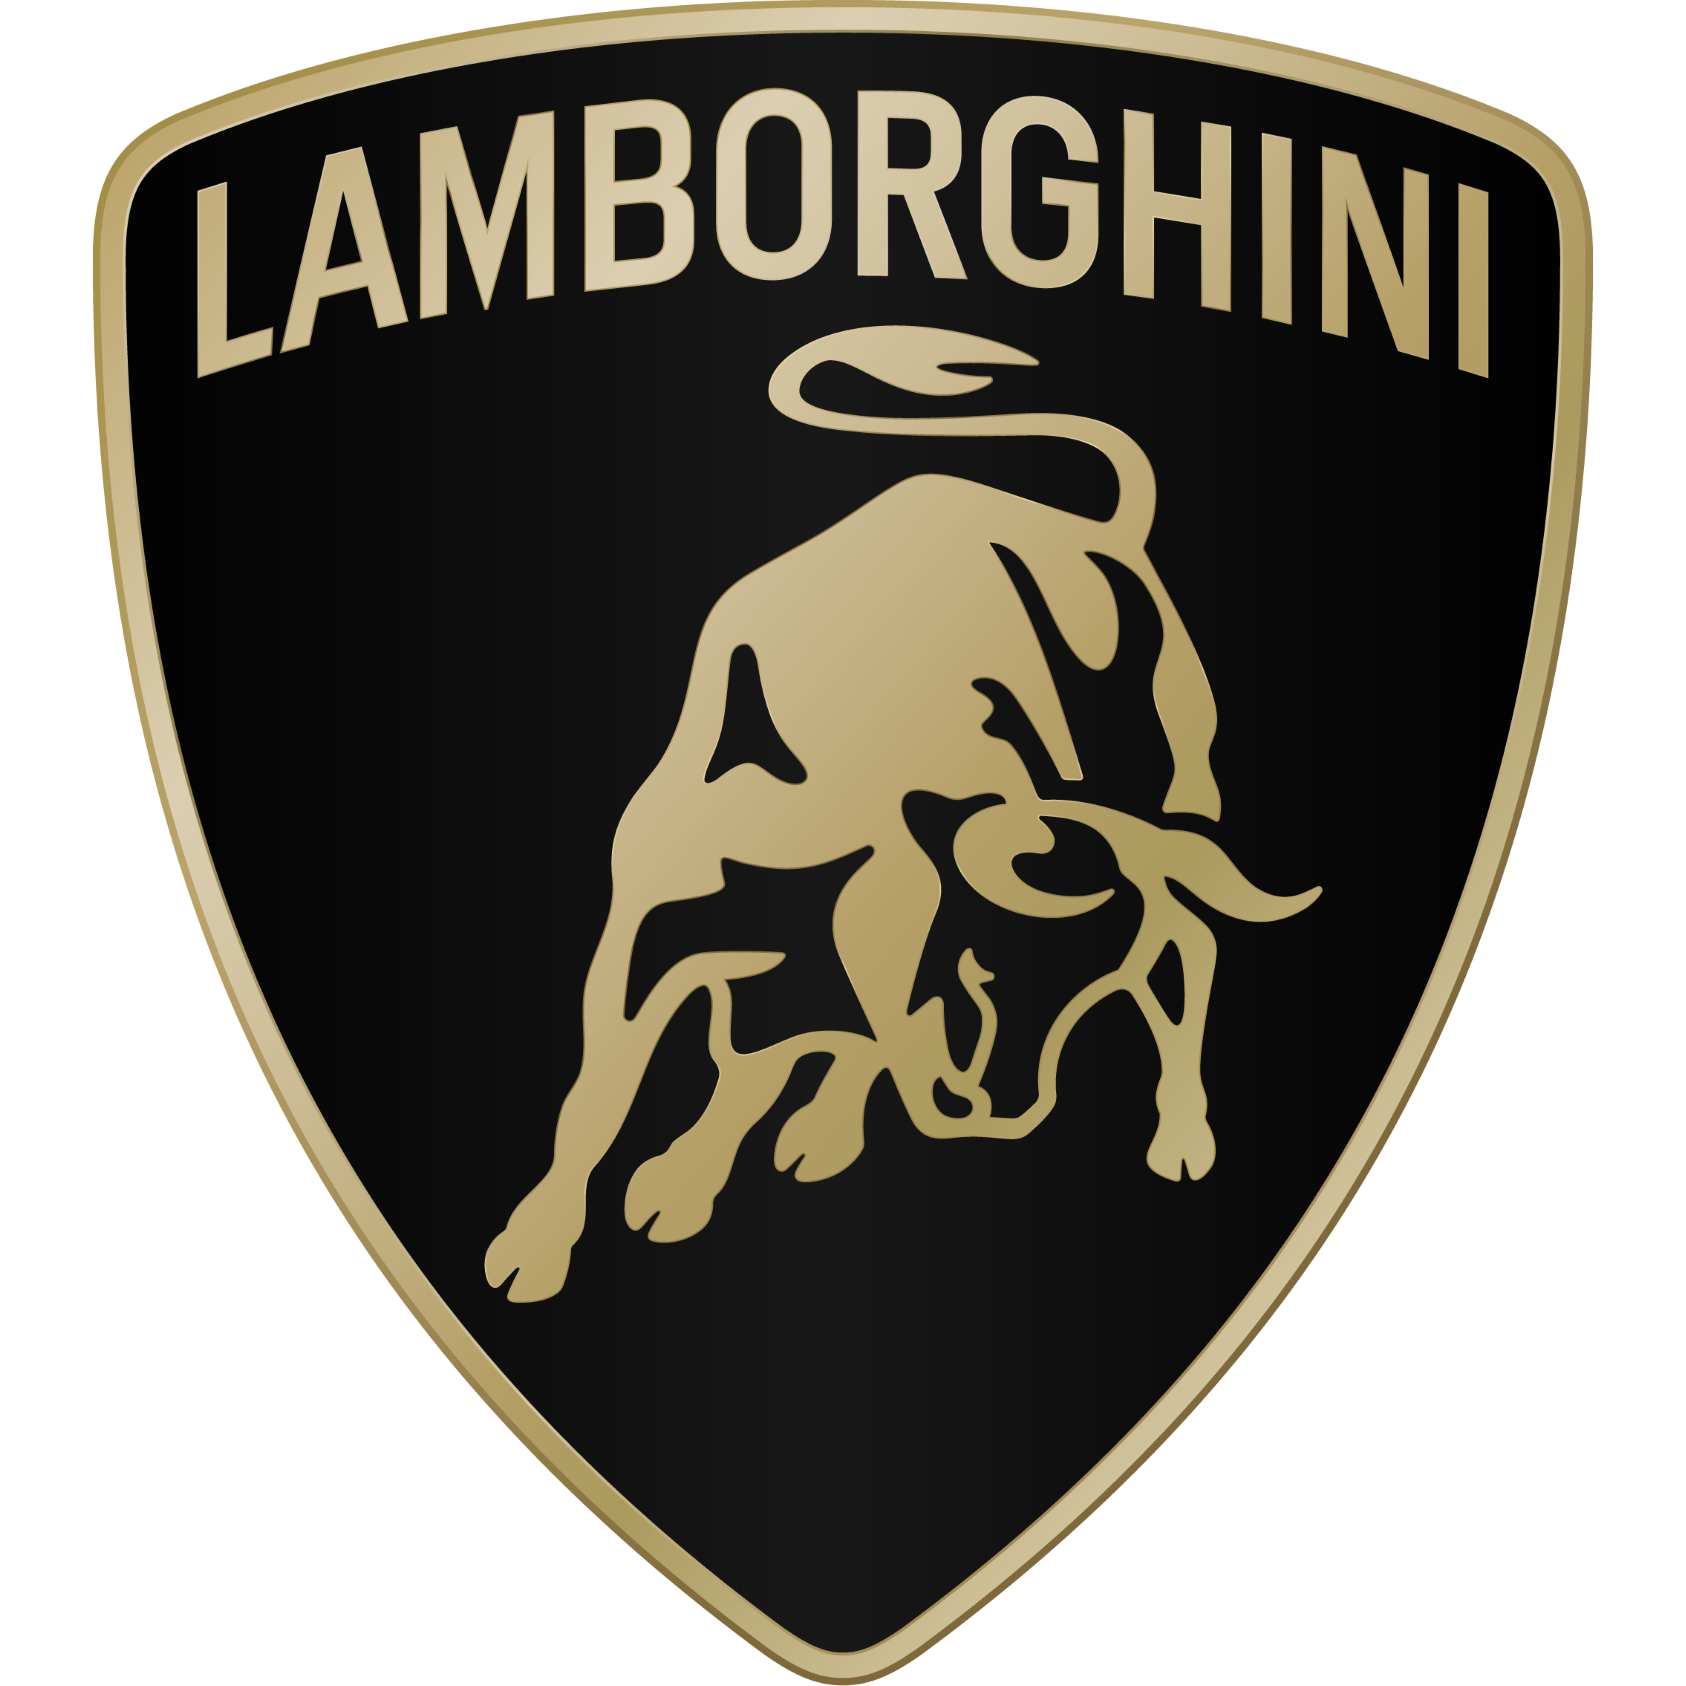 Lamborghini Birmingham Birmingham 01213 064007